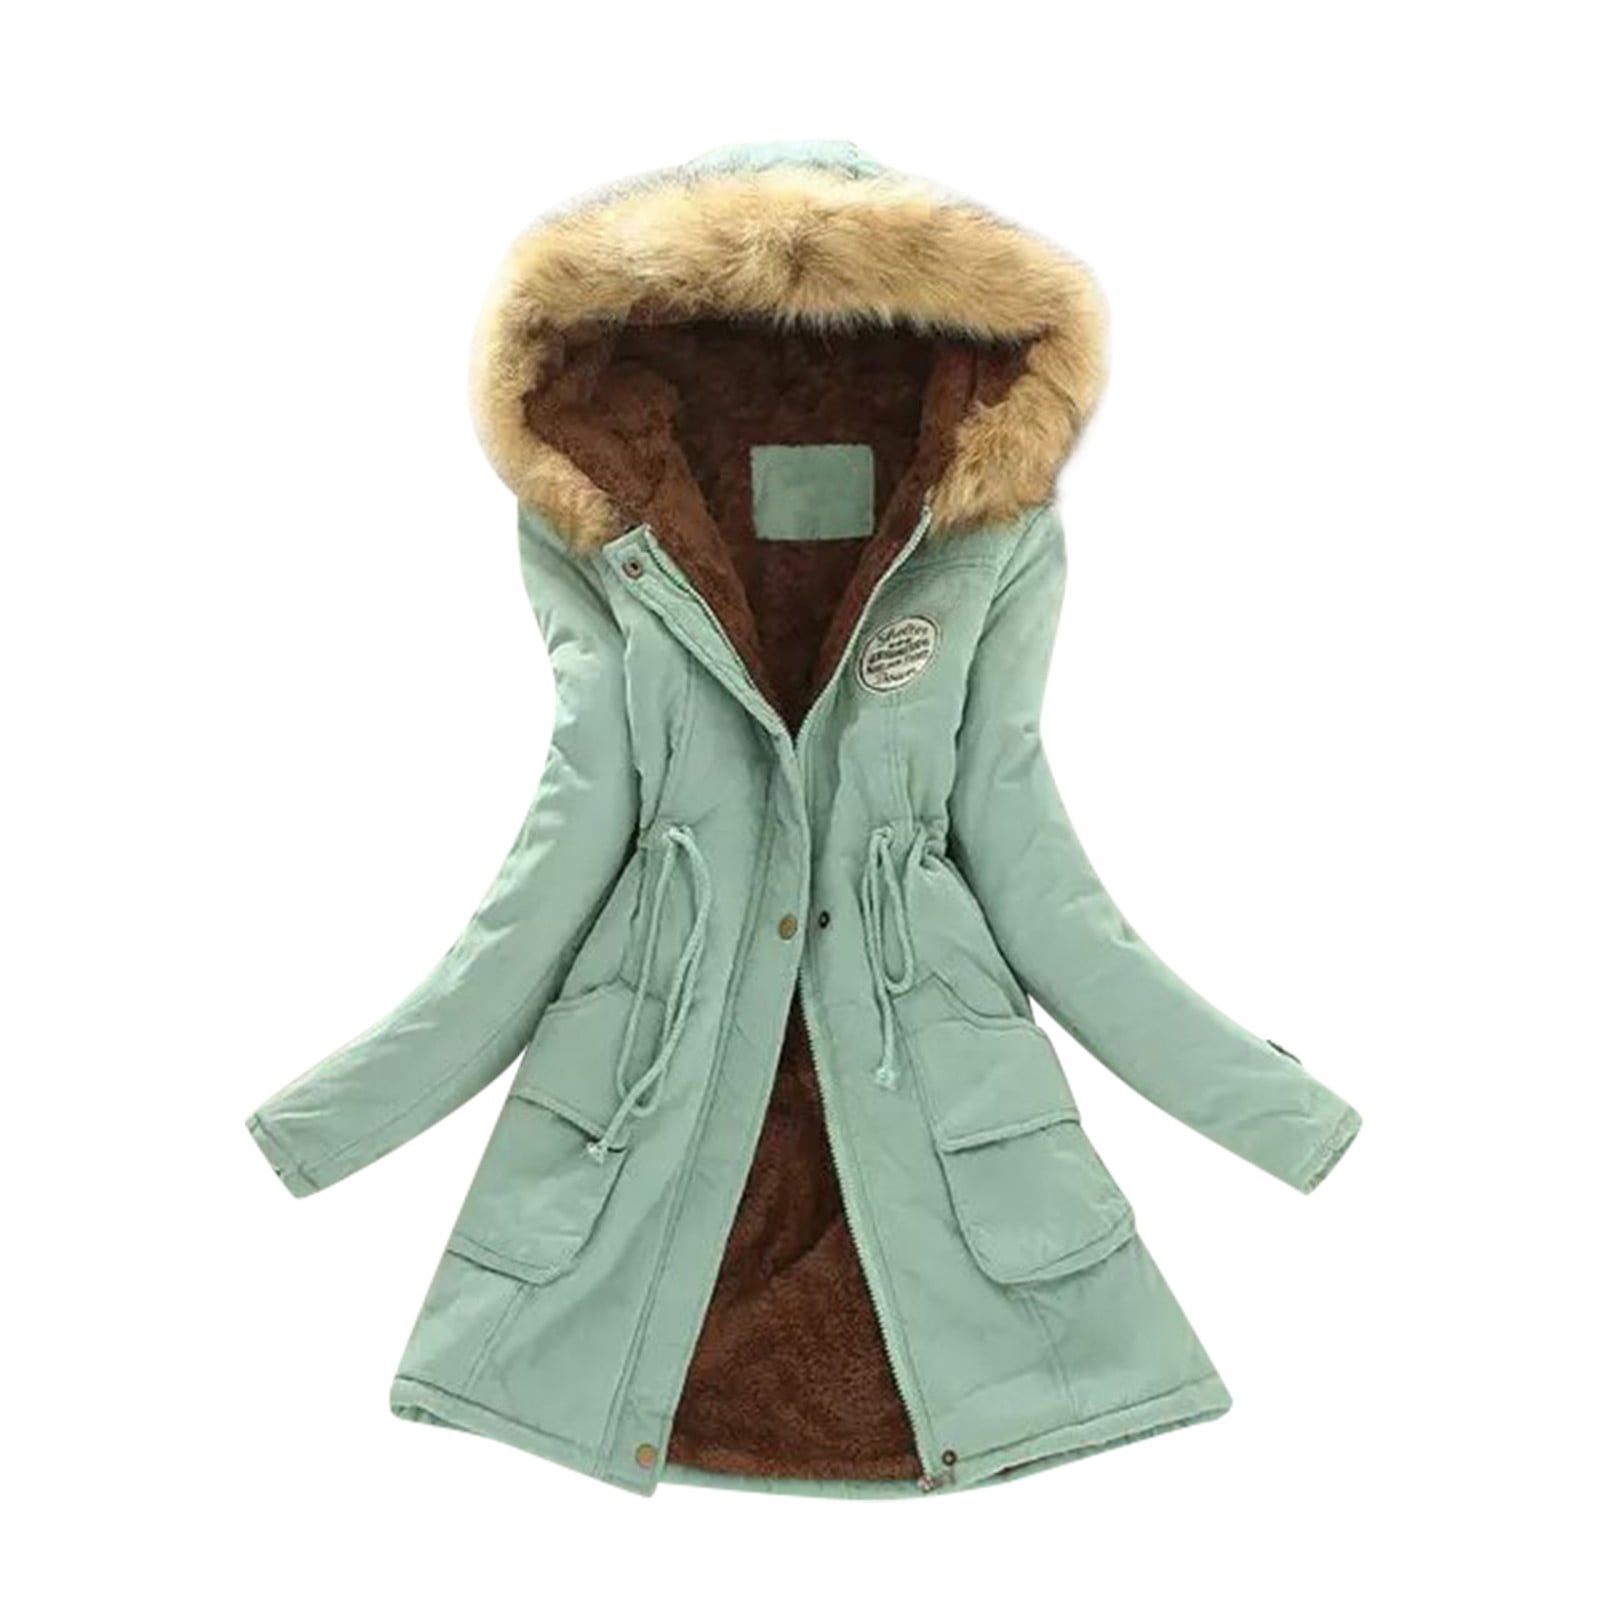 iOPQO Winter Coats for Women Warm Thickened Overcoat Warm Trendy Fleece  Lined Hooded Snow Coat Fleece Jacket,Jackets for Women,Fall Outfits Beige L  